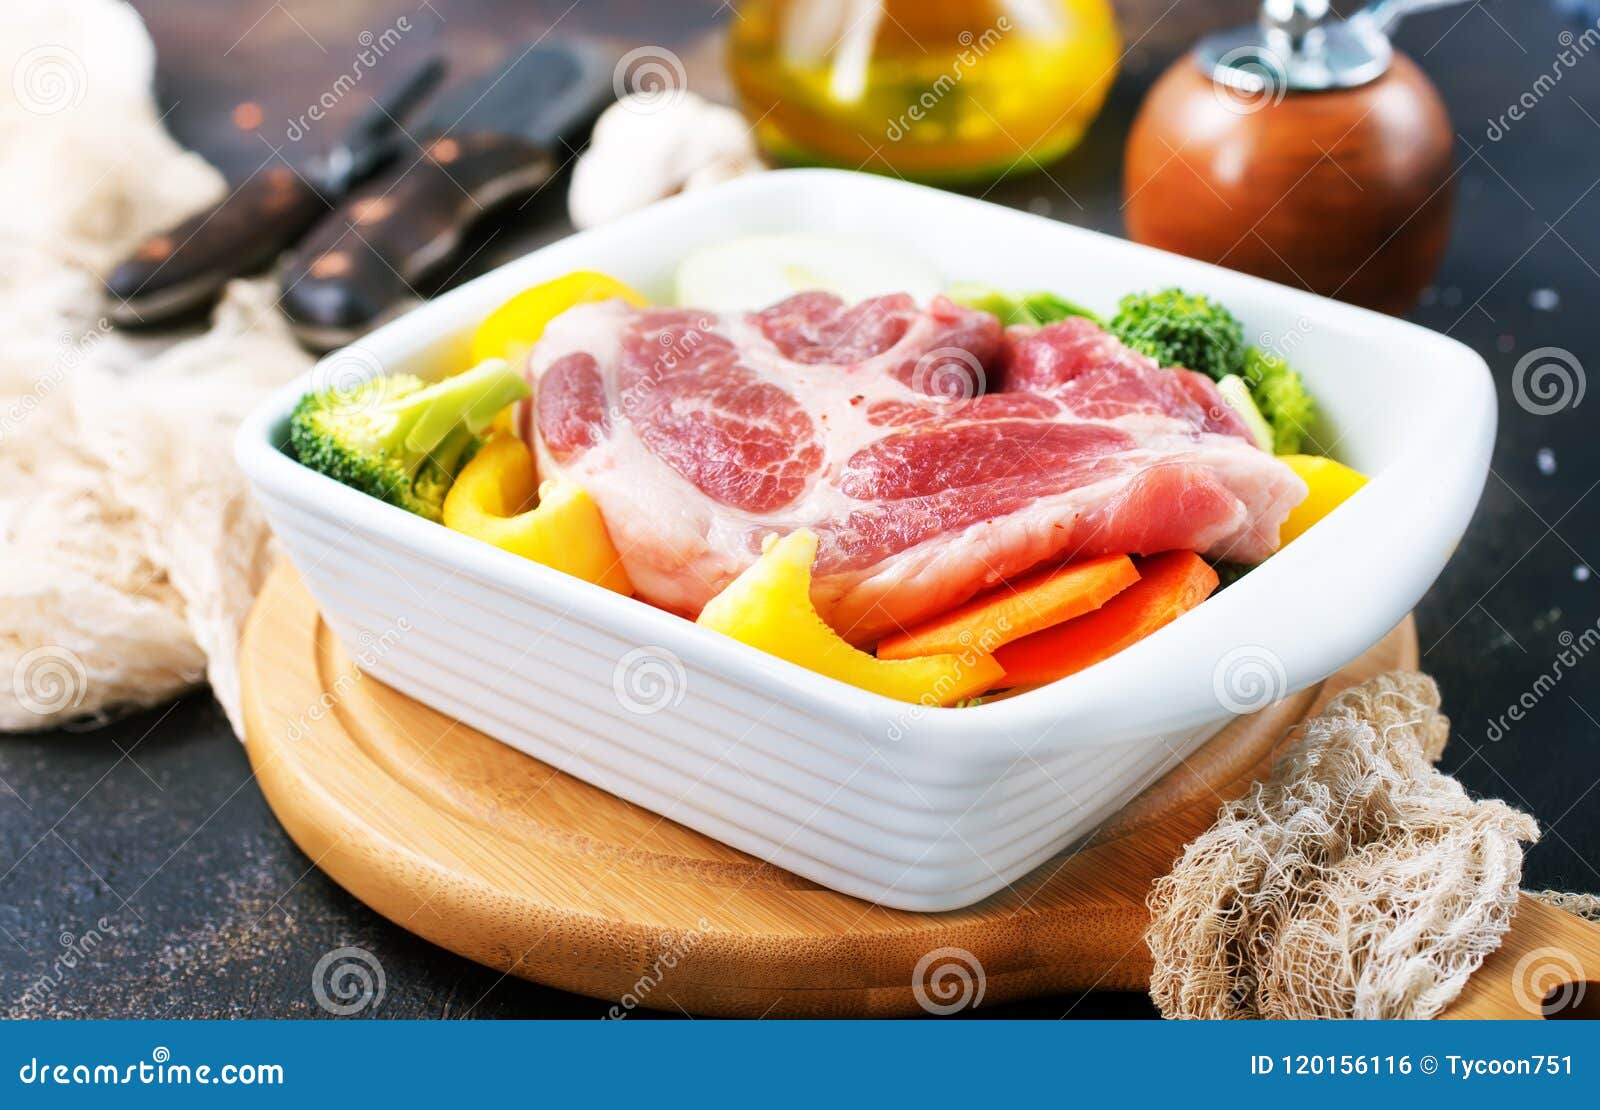 砧板上的生菜与五花肉47112_蔬菜/肉_收获季节_图库壁纸_68Design